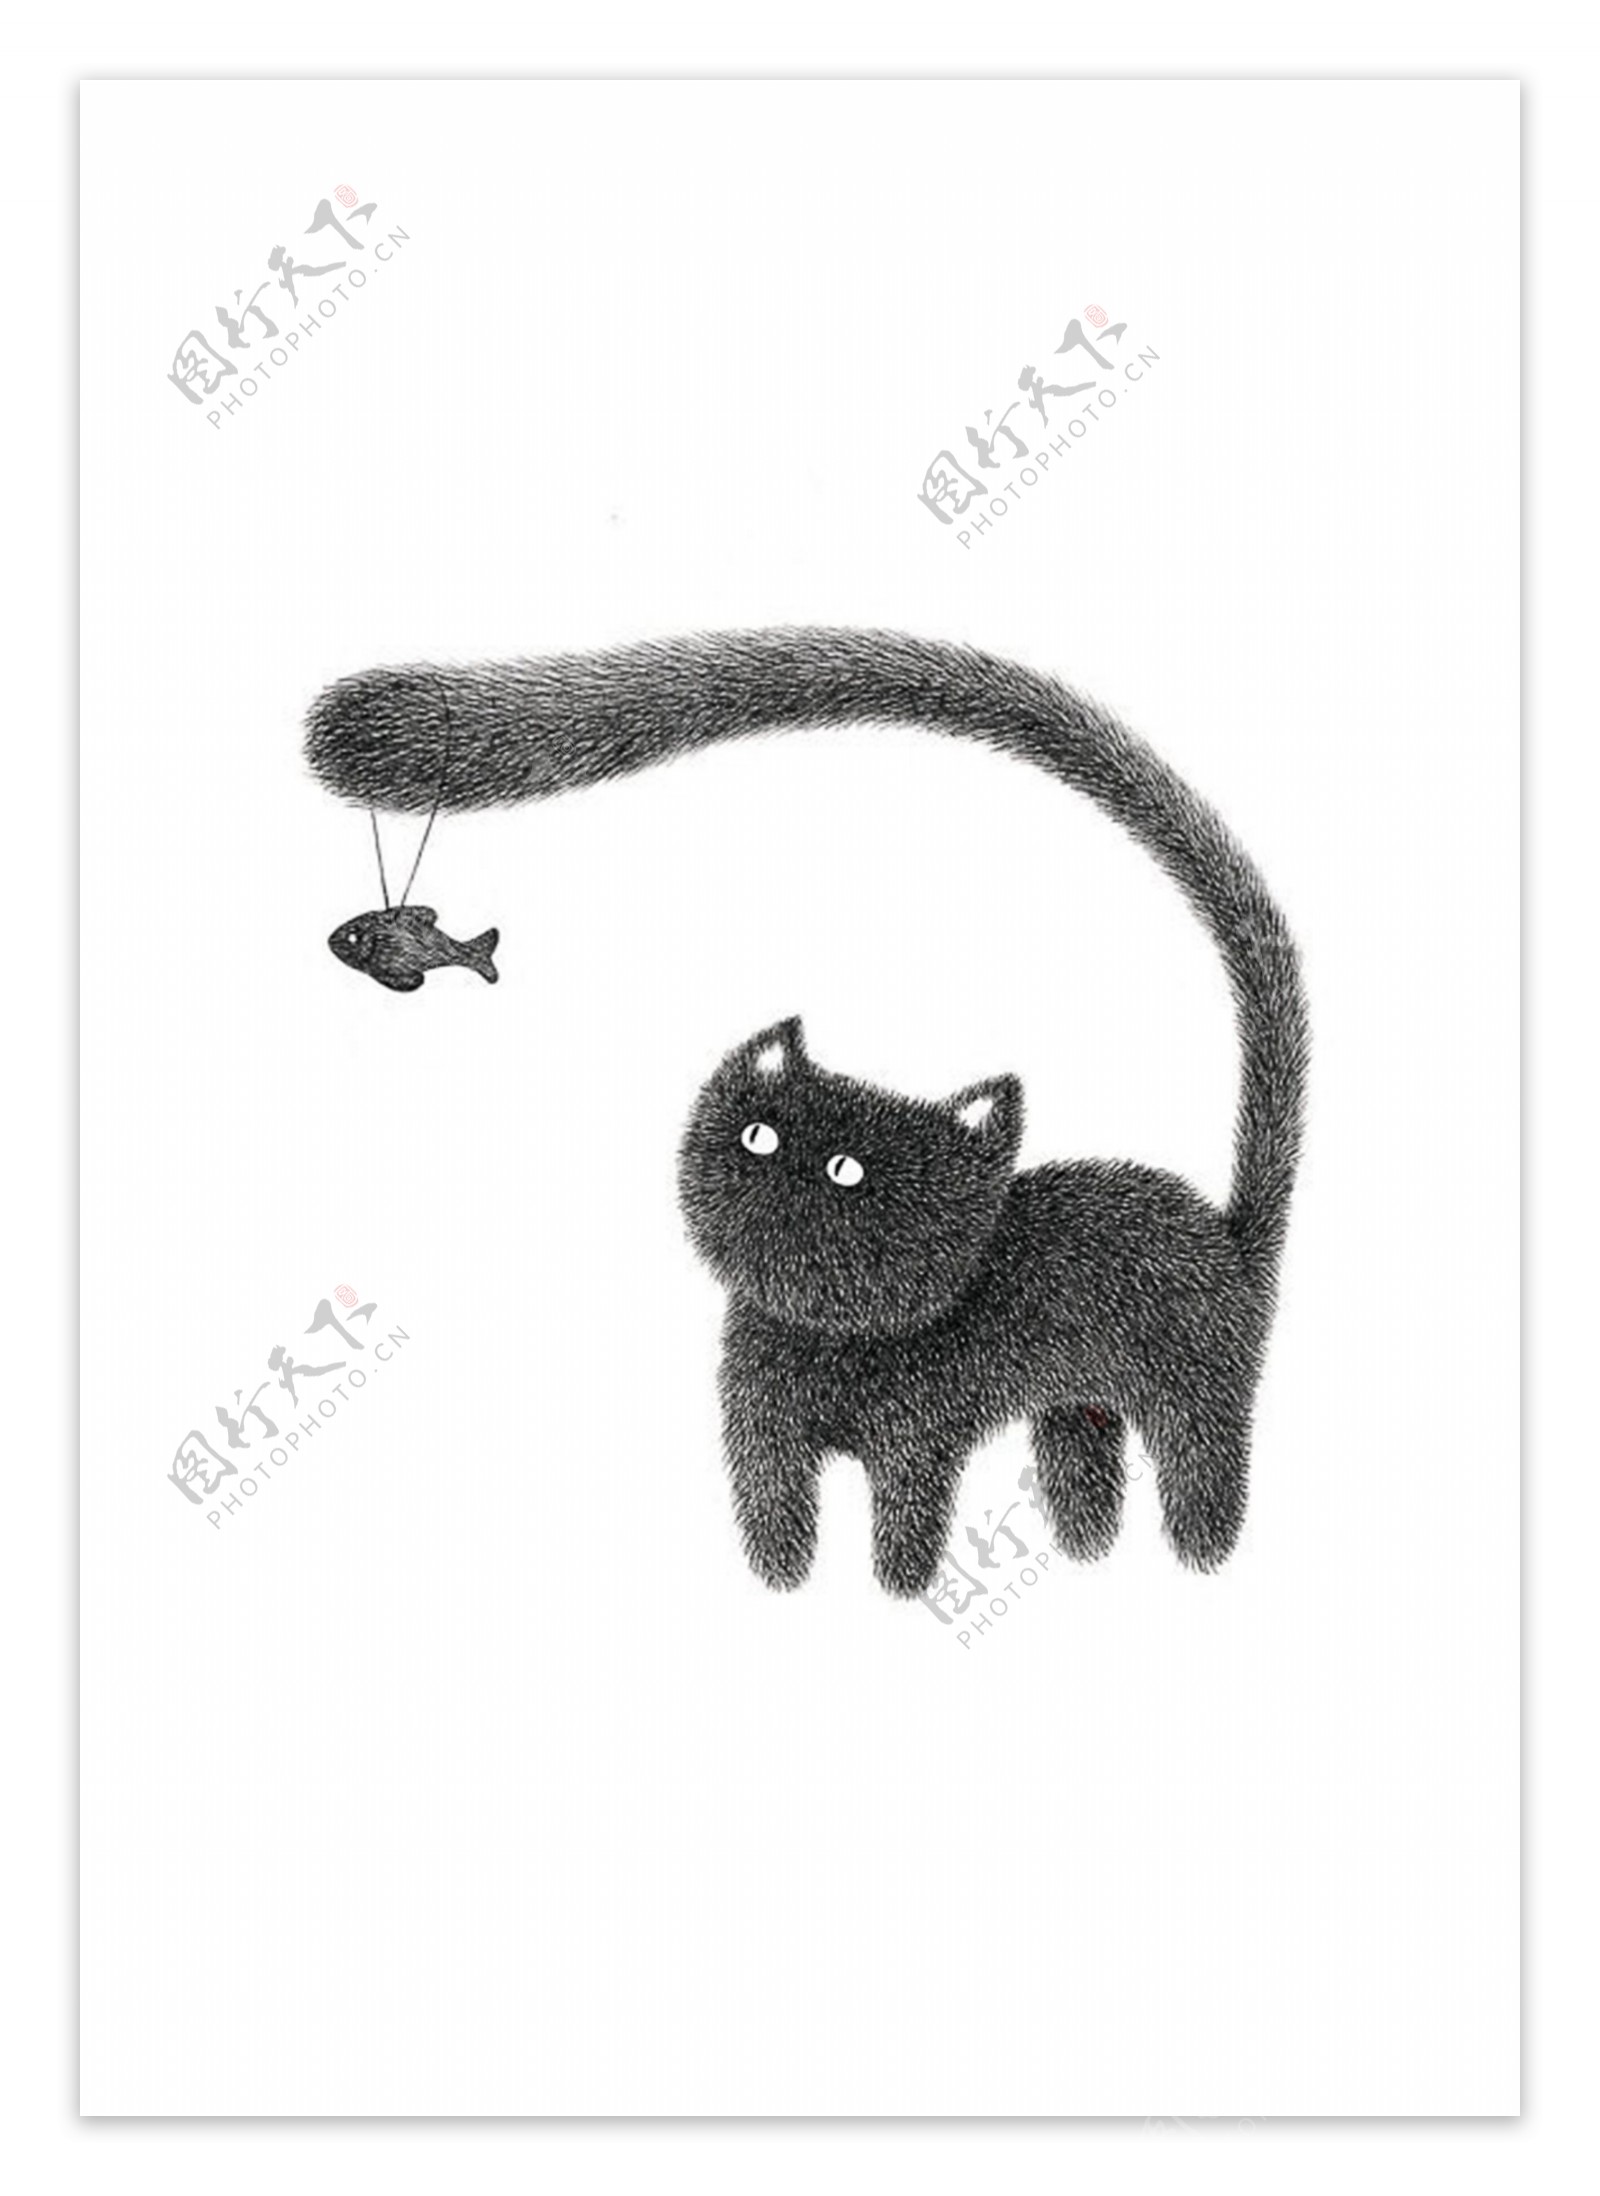 黑白猫鱼趣味插画装饰图案创意设计元素素材